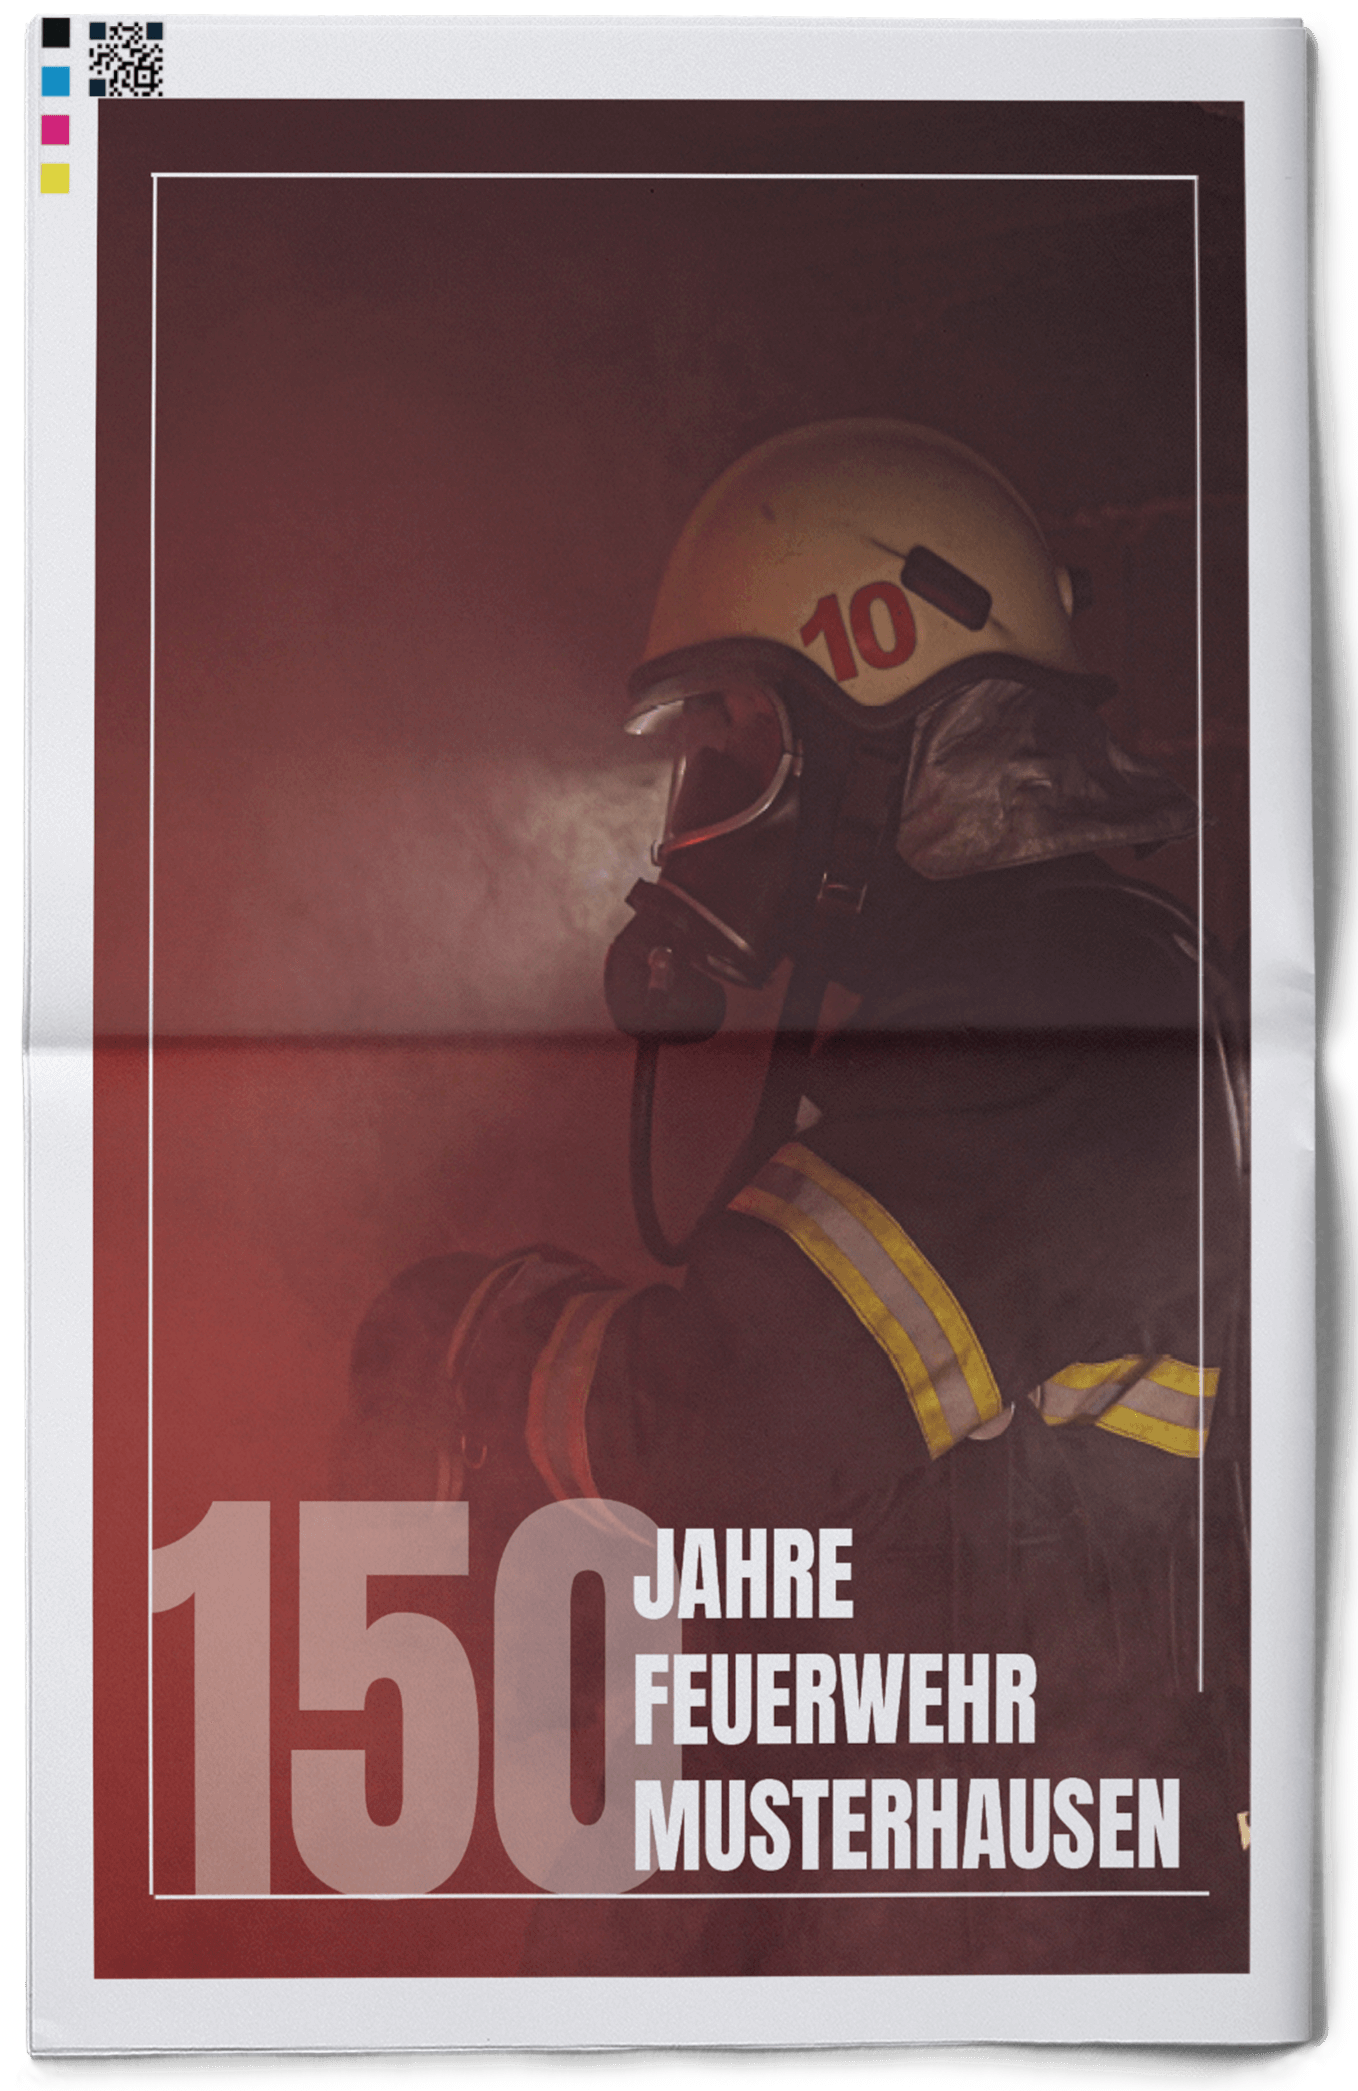 Vorlage für Titelseite einer Festzeitung für die Feuerwehr